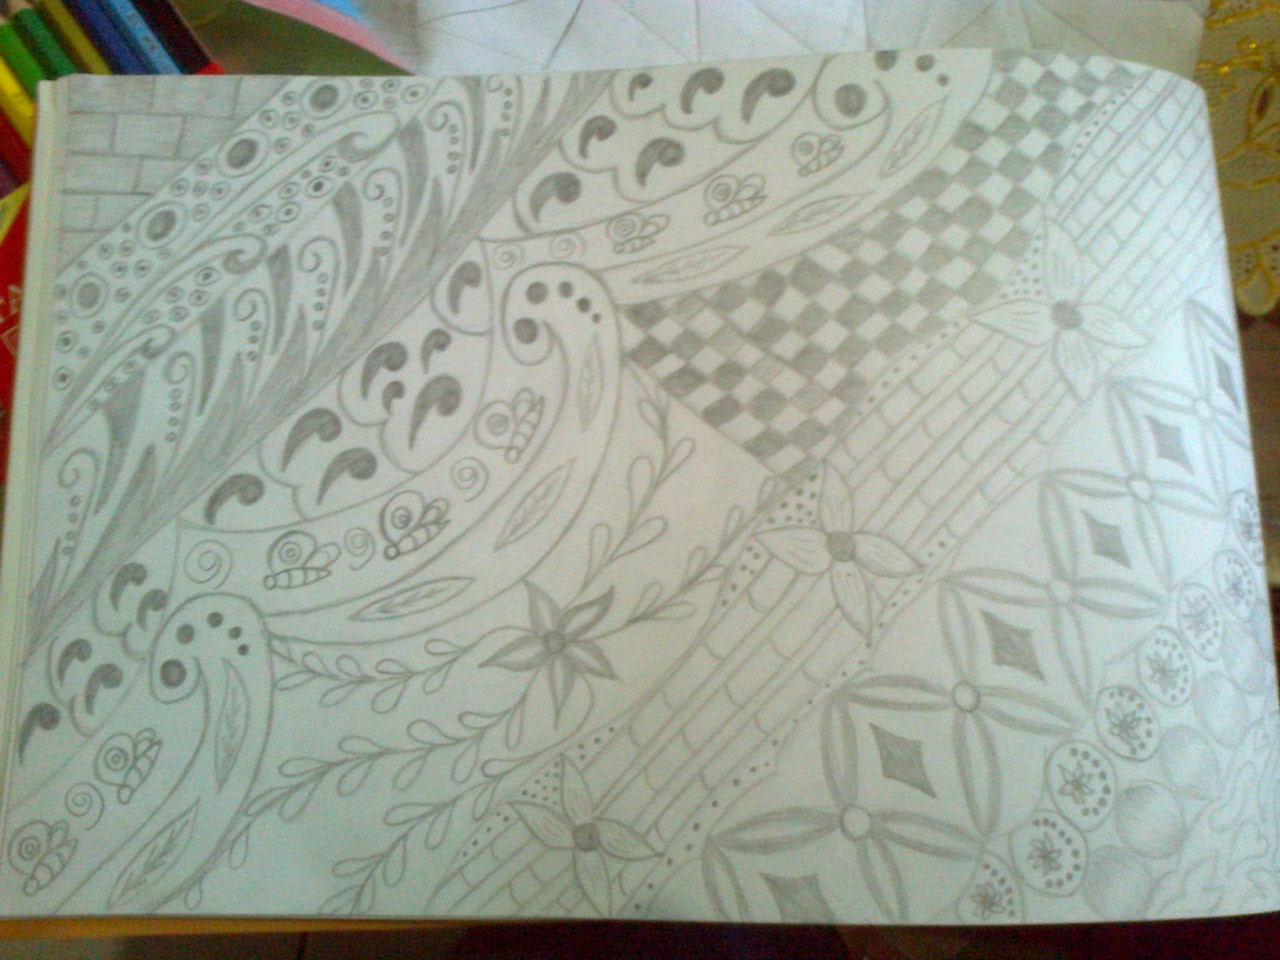 Menggambar batik | My Imagination